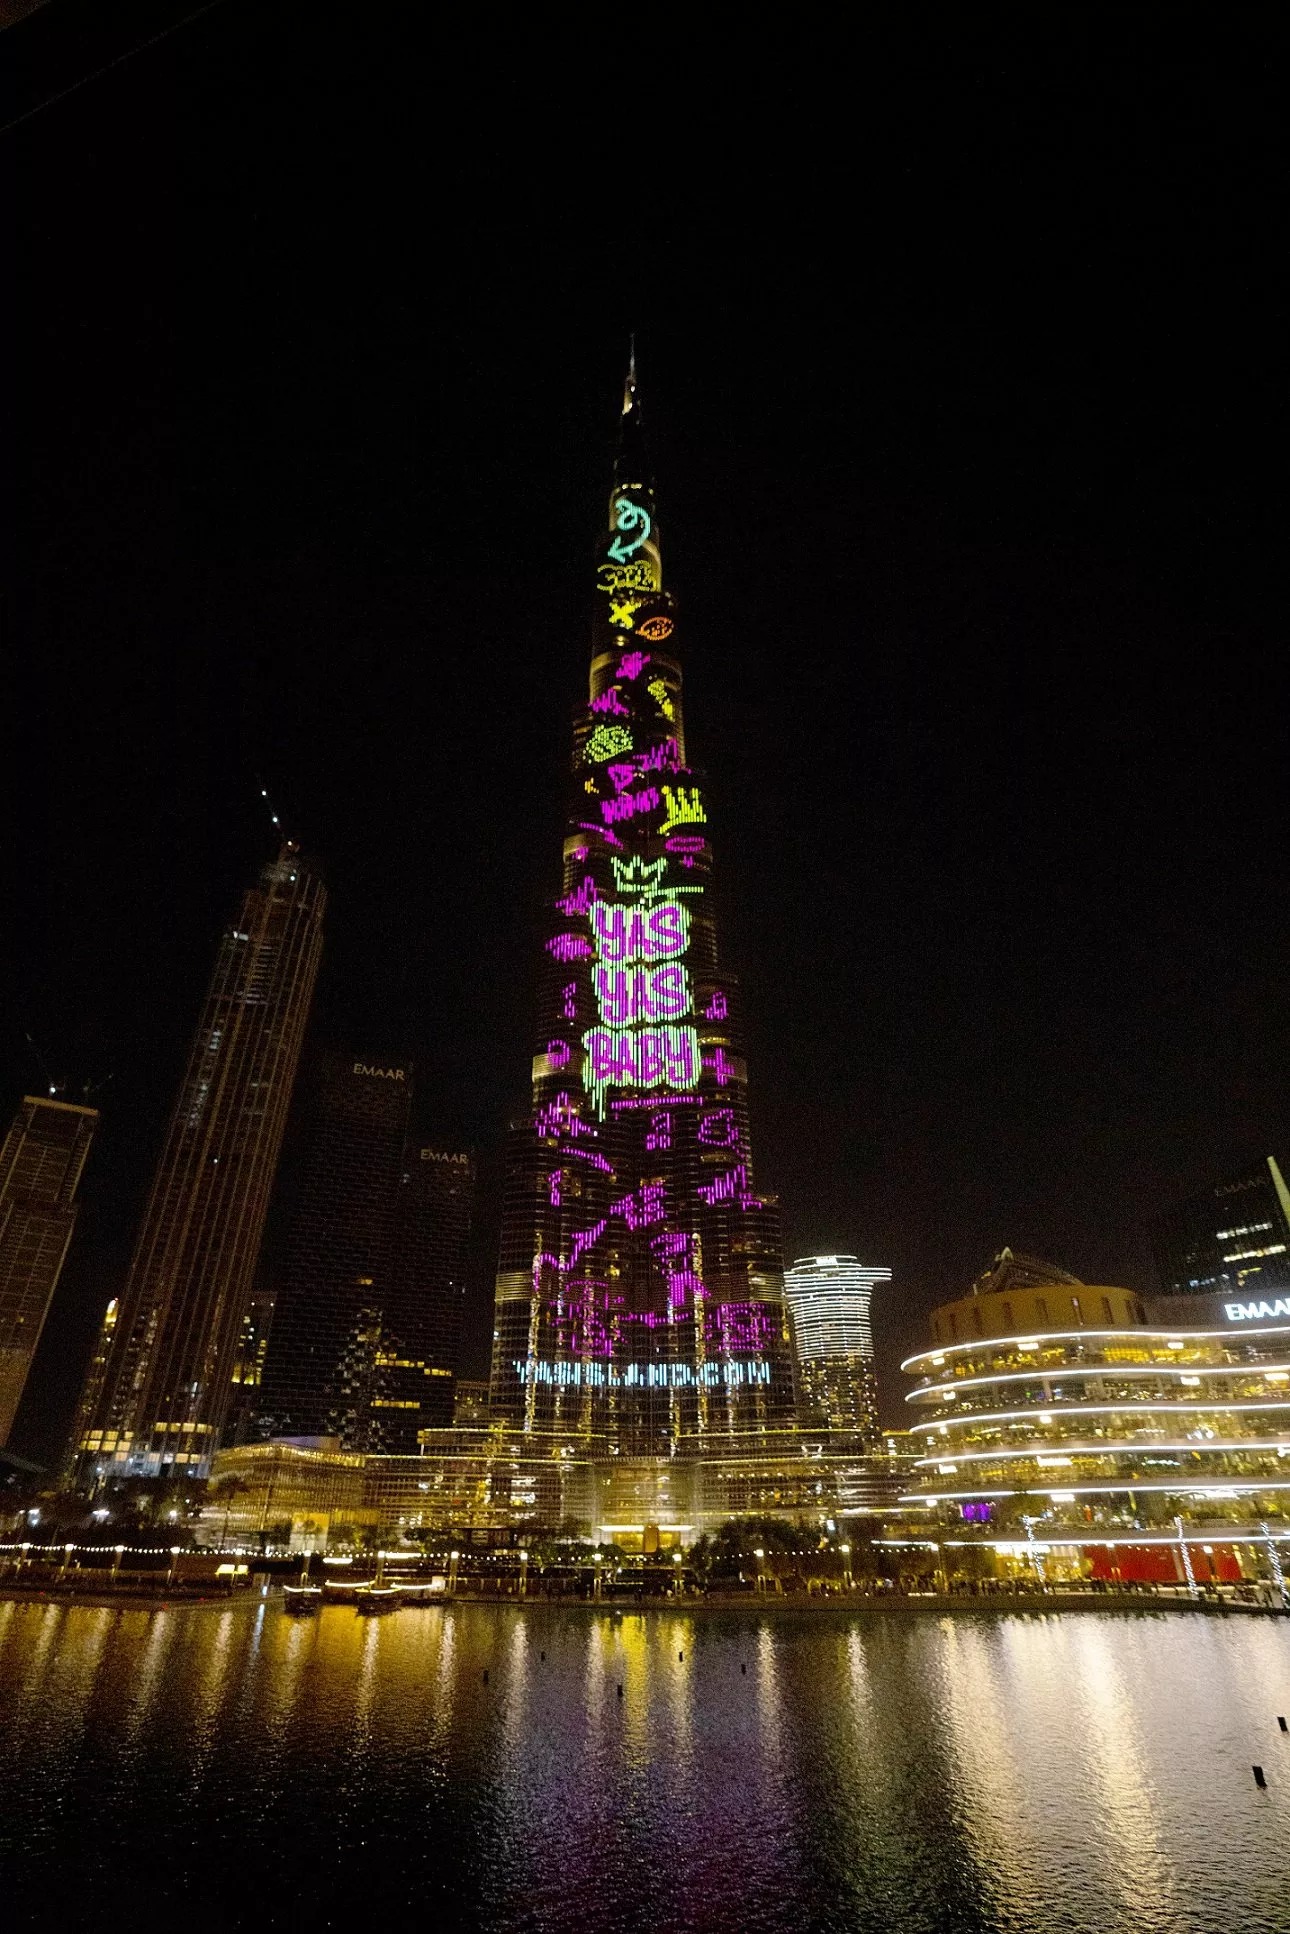 جزيرة ياس تُطلق أكبر عرض كاريوكي في العالم على برج خليفة بأغنية مميزة